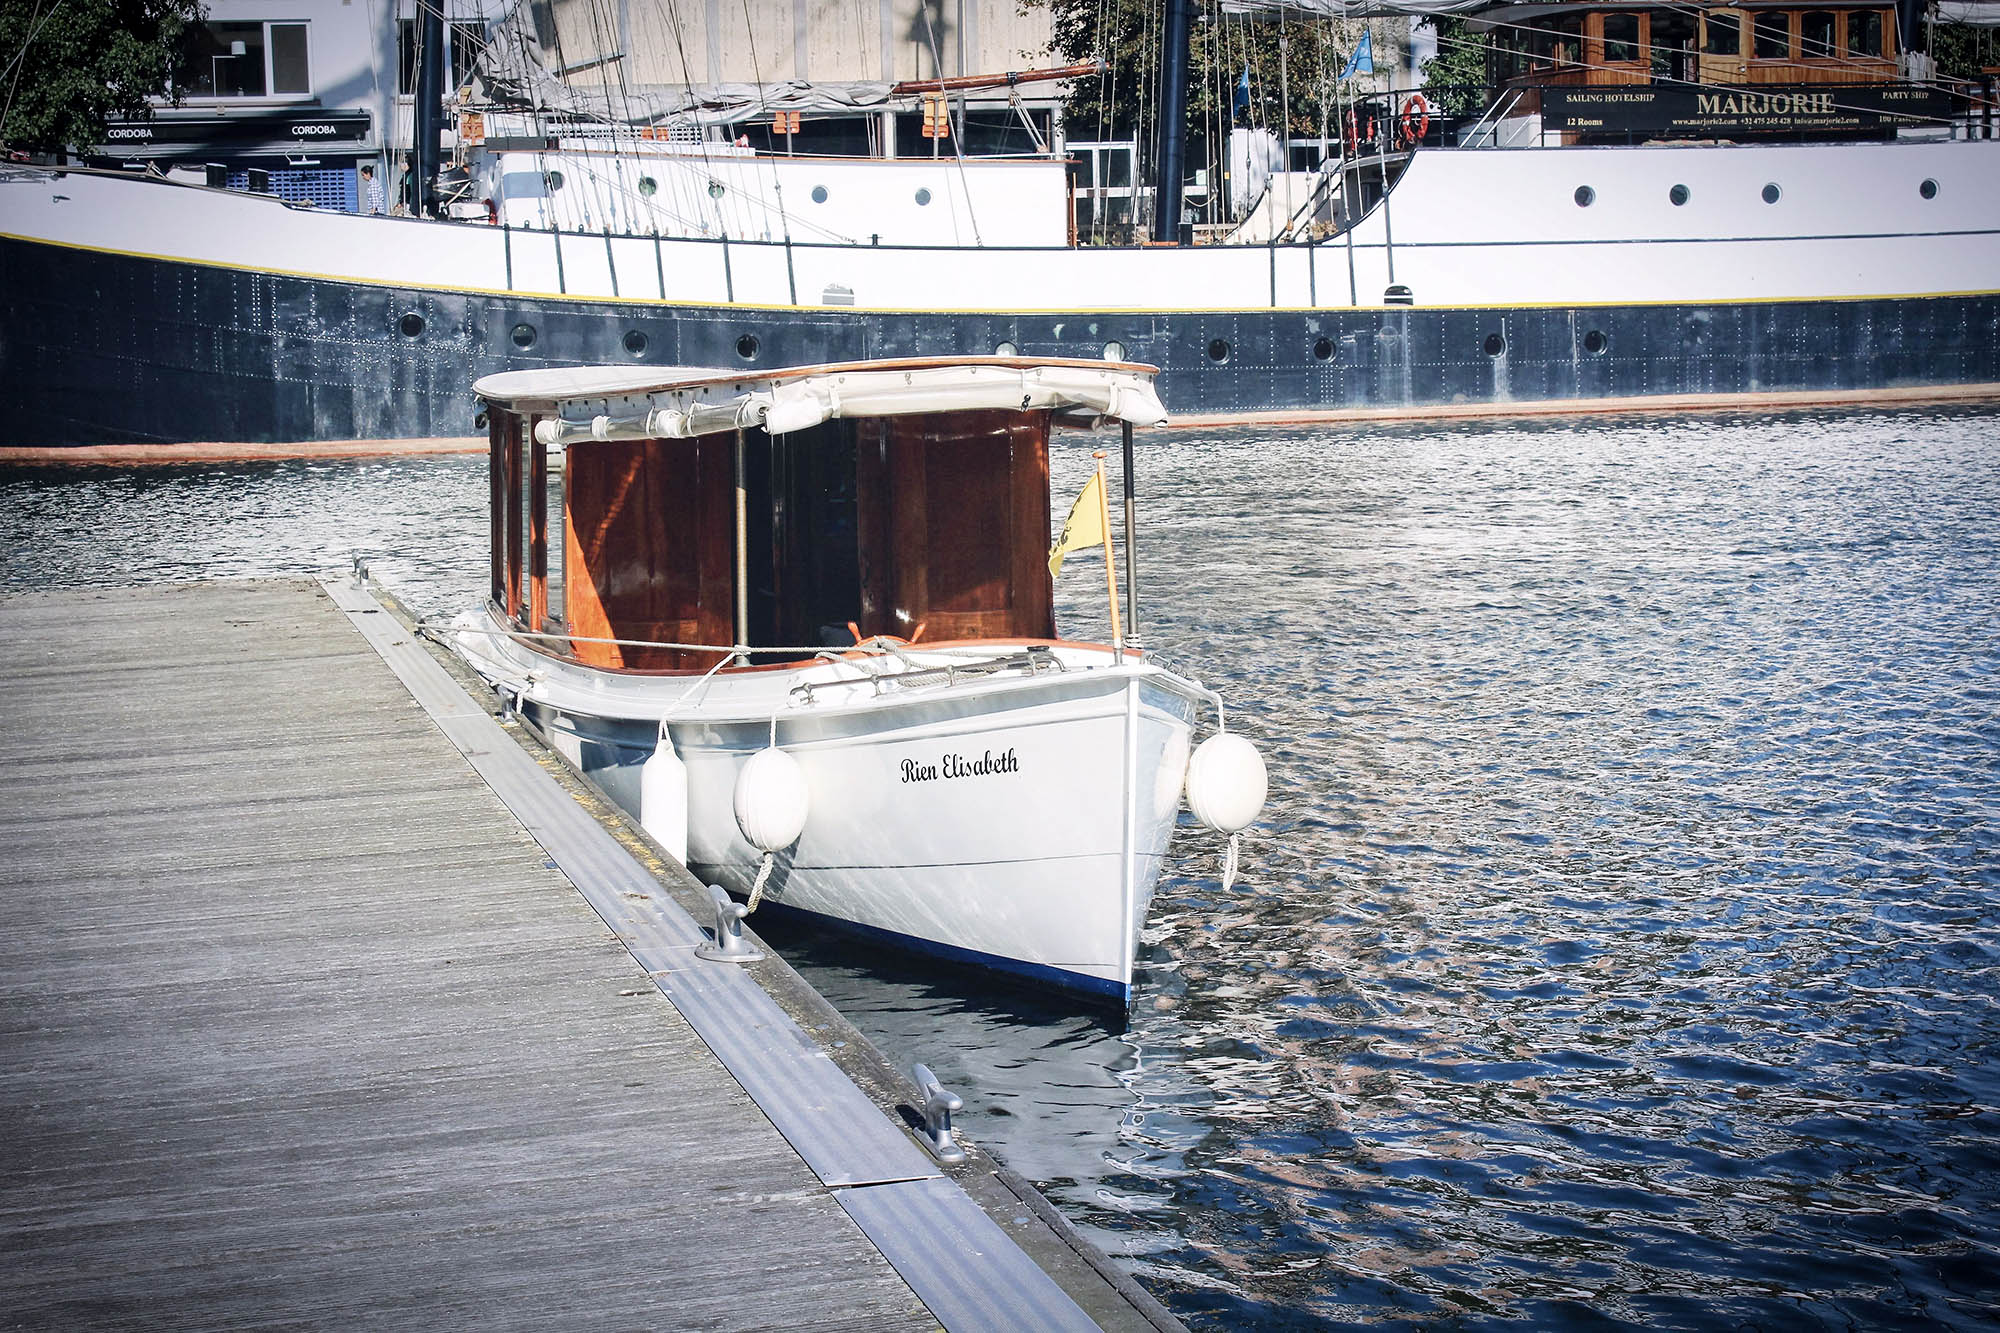 Rein Elisabeth - Rondvaarten Eilandje - Boottochten MAS - Antwerpen. Antwerp Boat Tour